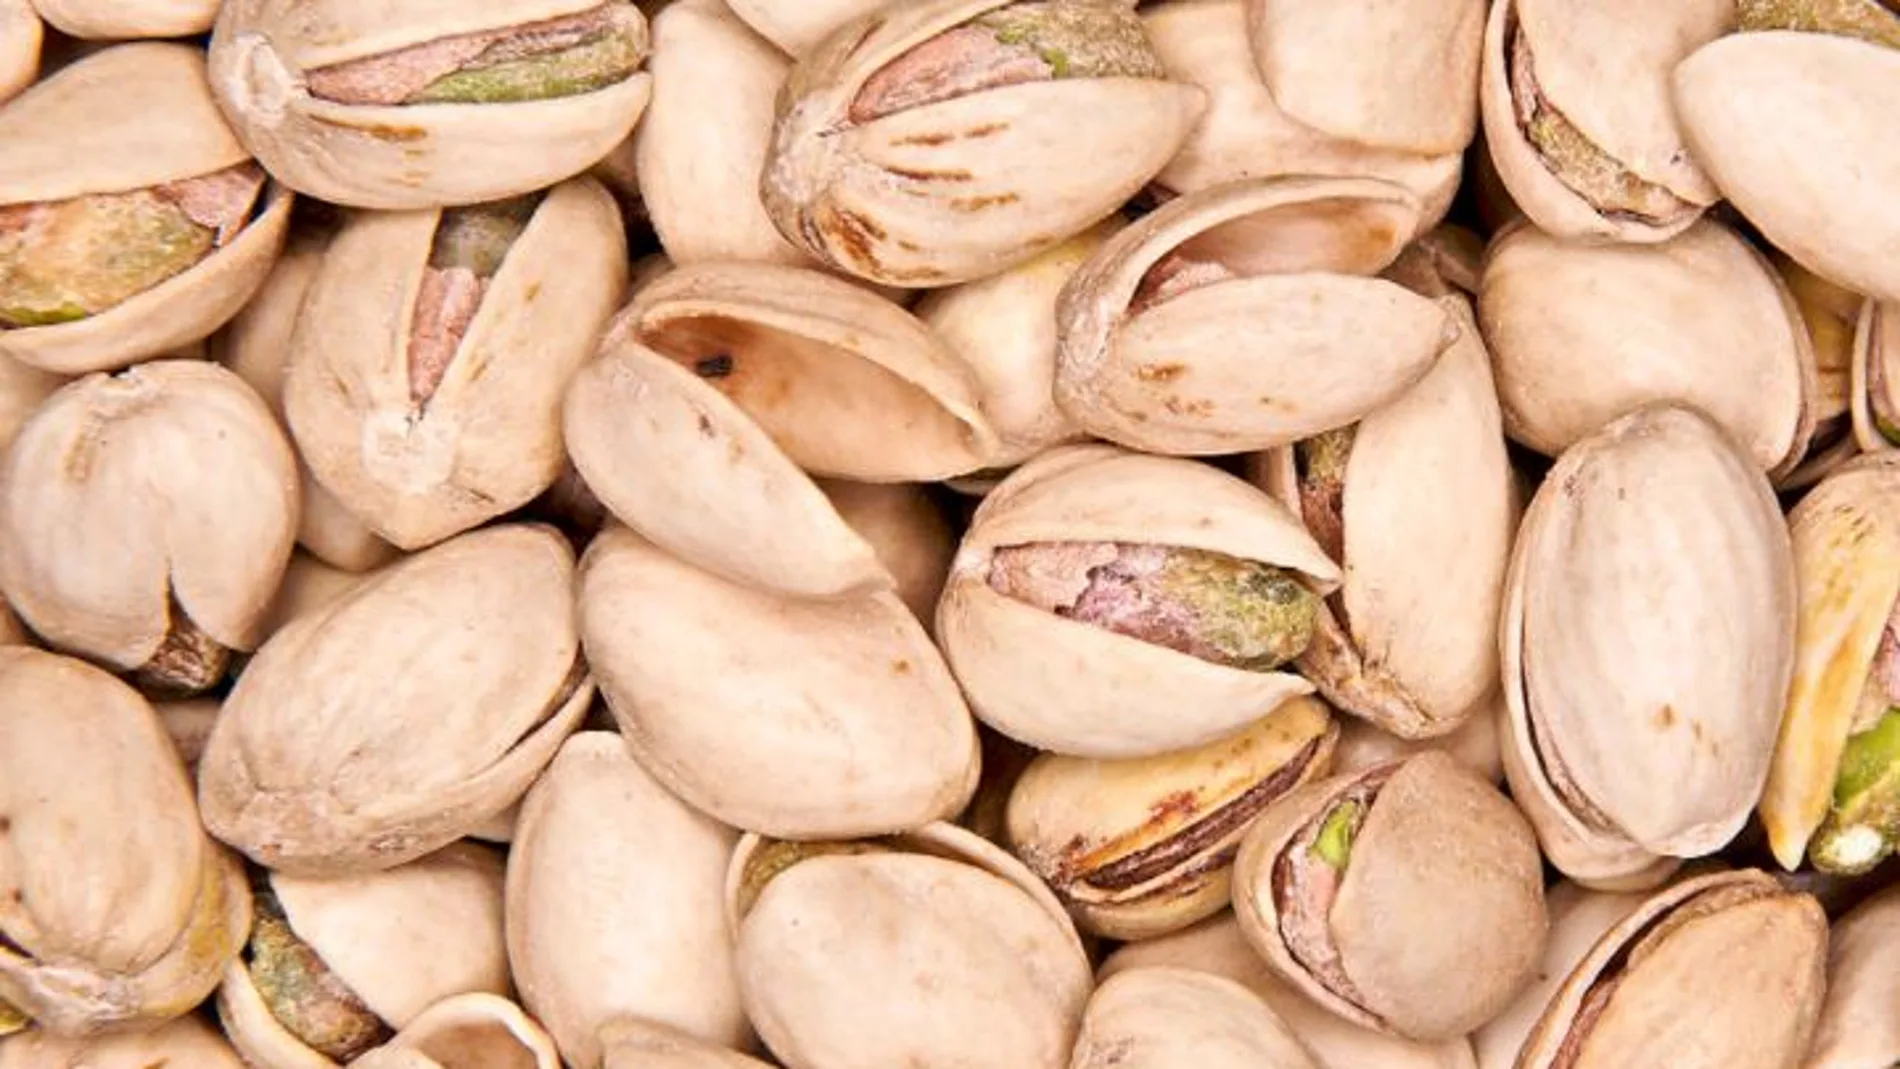 El consumo de unos 50 pistachos ayuda a lucir una piel radiante por su riqueza en vitaminas y minerales